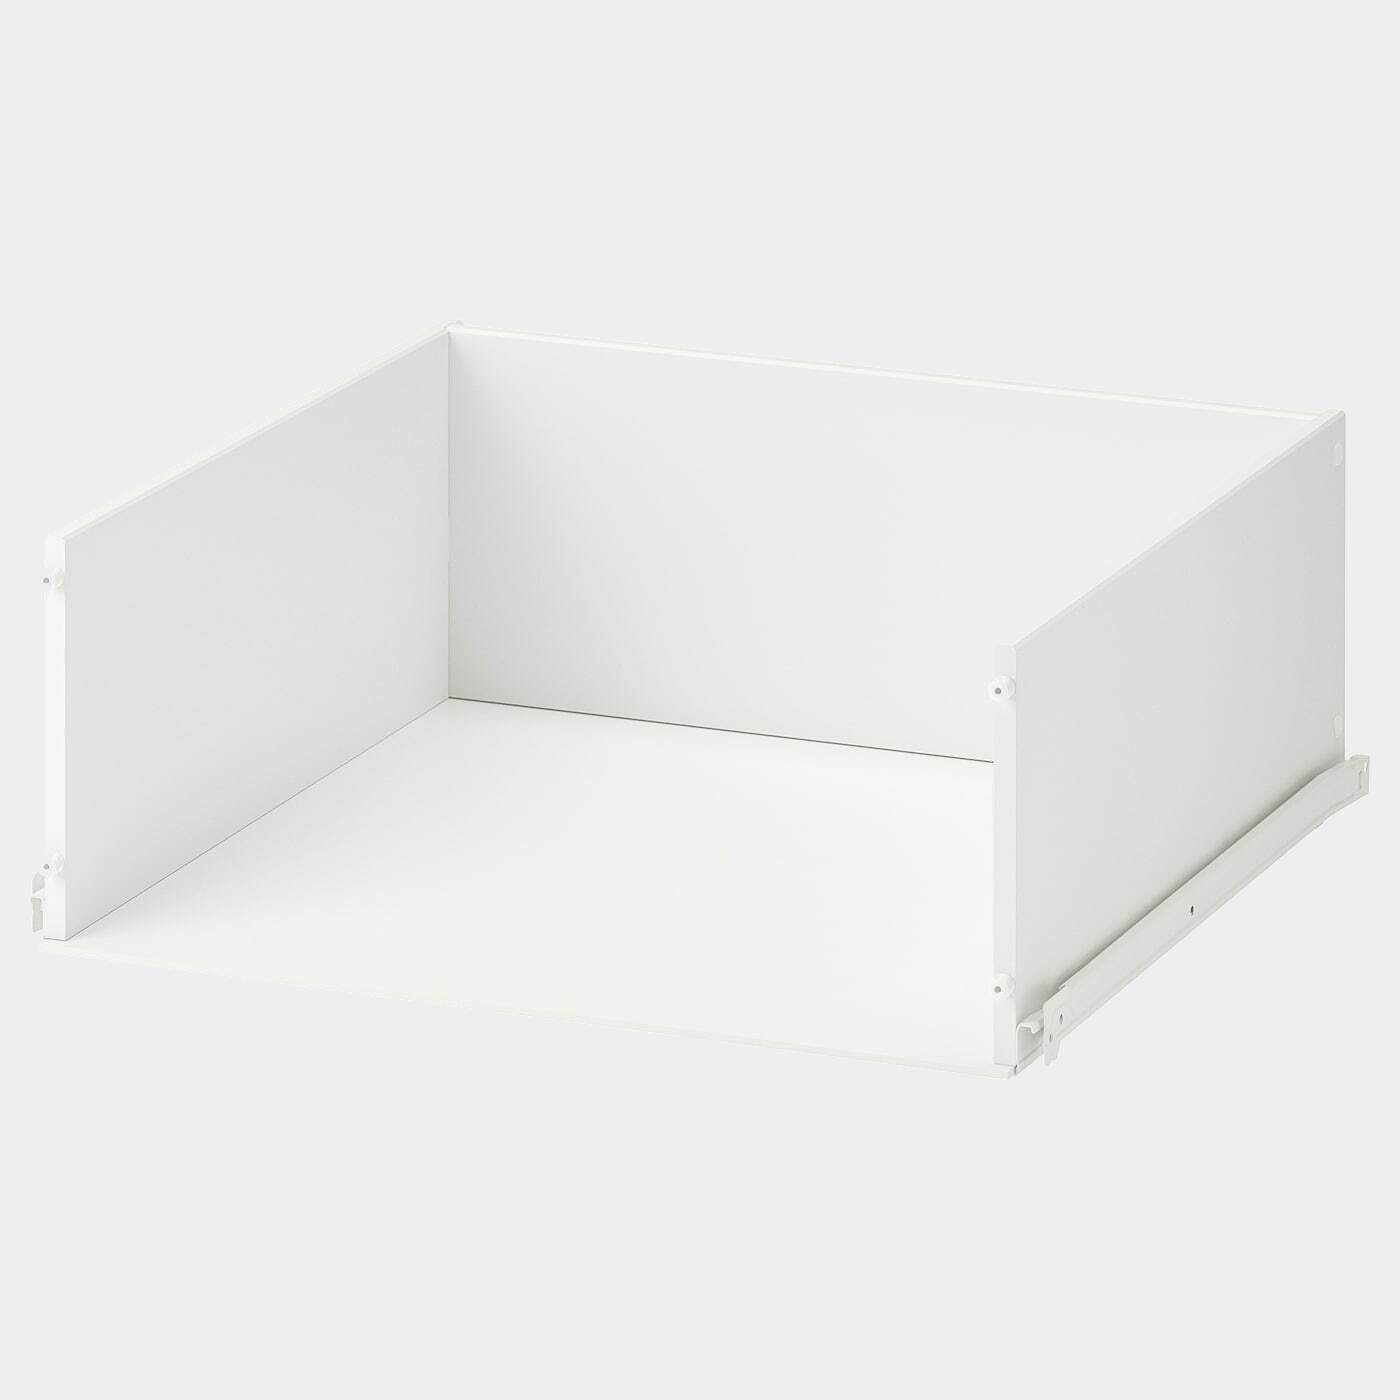 KONSTRUERA Schublade ohne Front  -  - Möbel Ideen für dein Zuhause von Home Trends. Möbel Trends von Social Media Influencer für dein Skandi Zuhause.